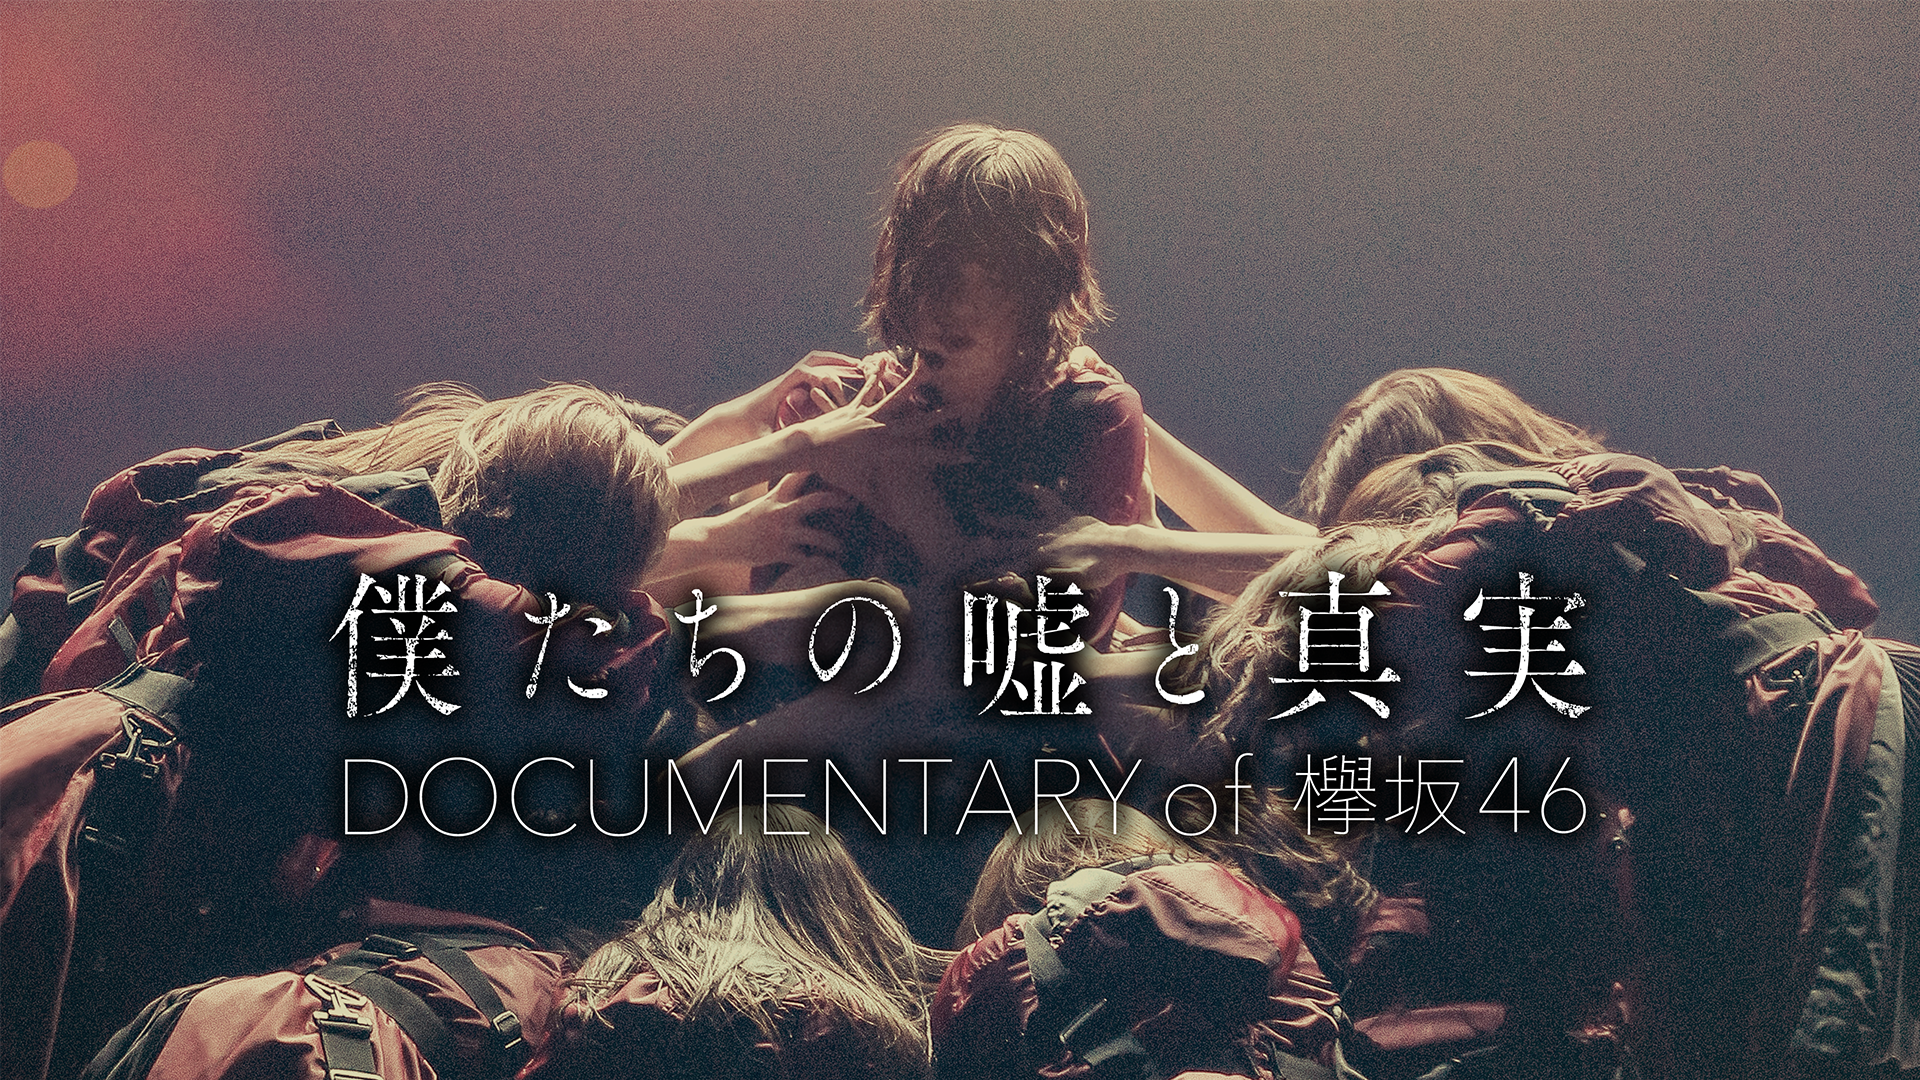 僕たちの嘘と真実 Documentary of 欅坂46(邦画 / 2020) - 動画配信 | U 